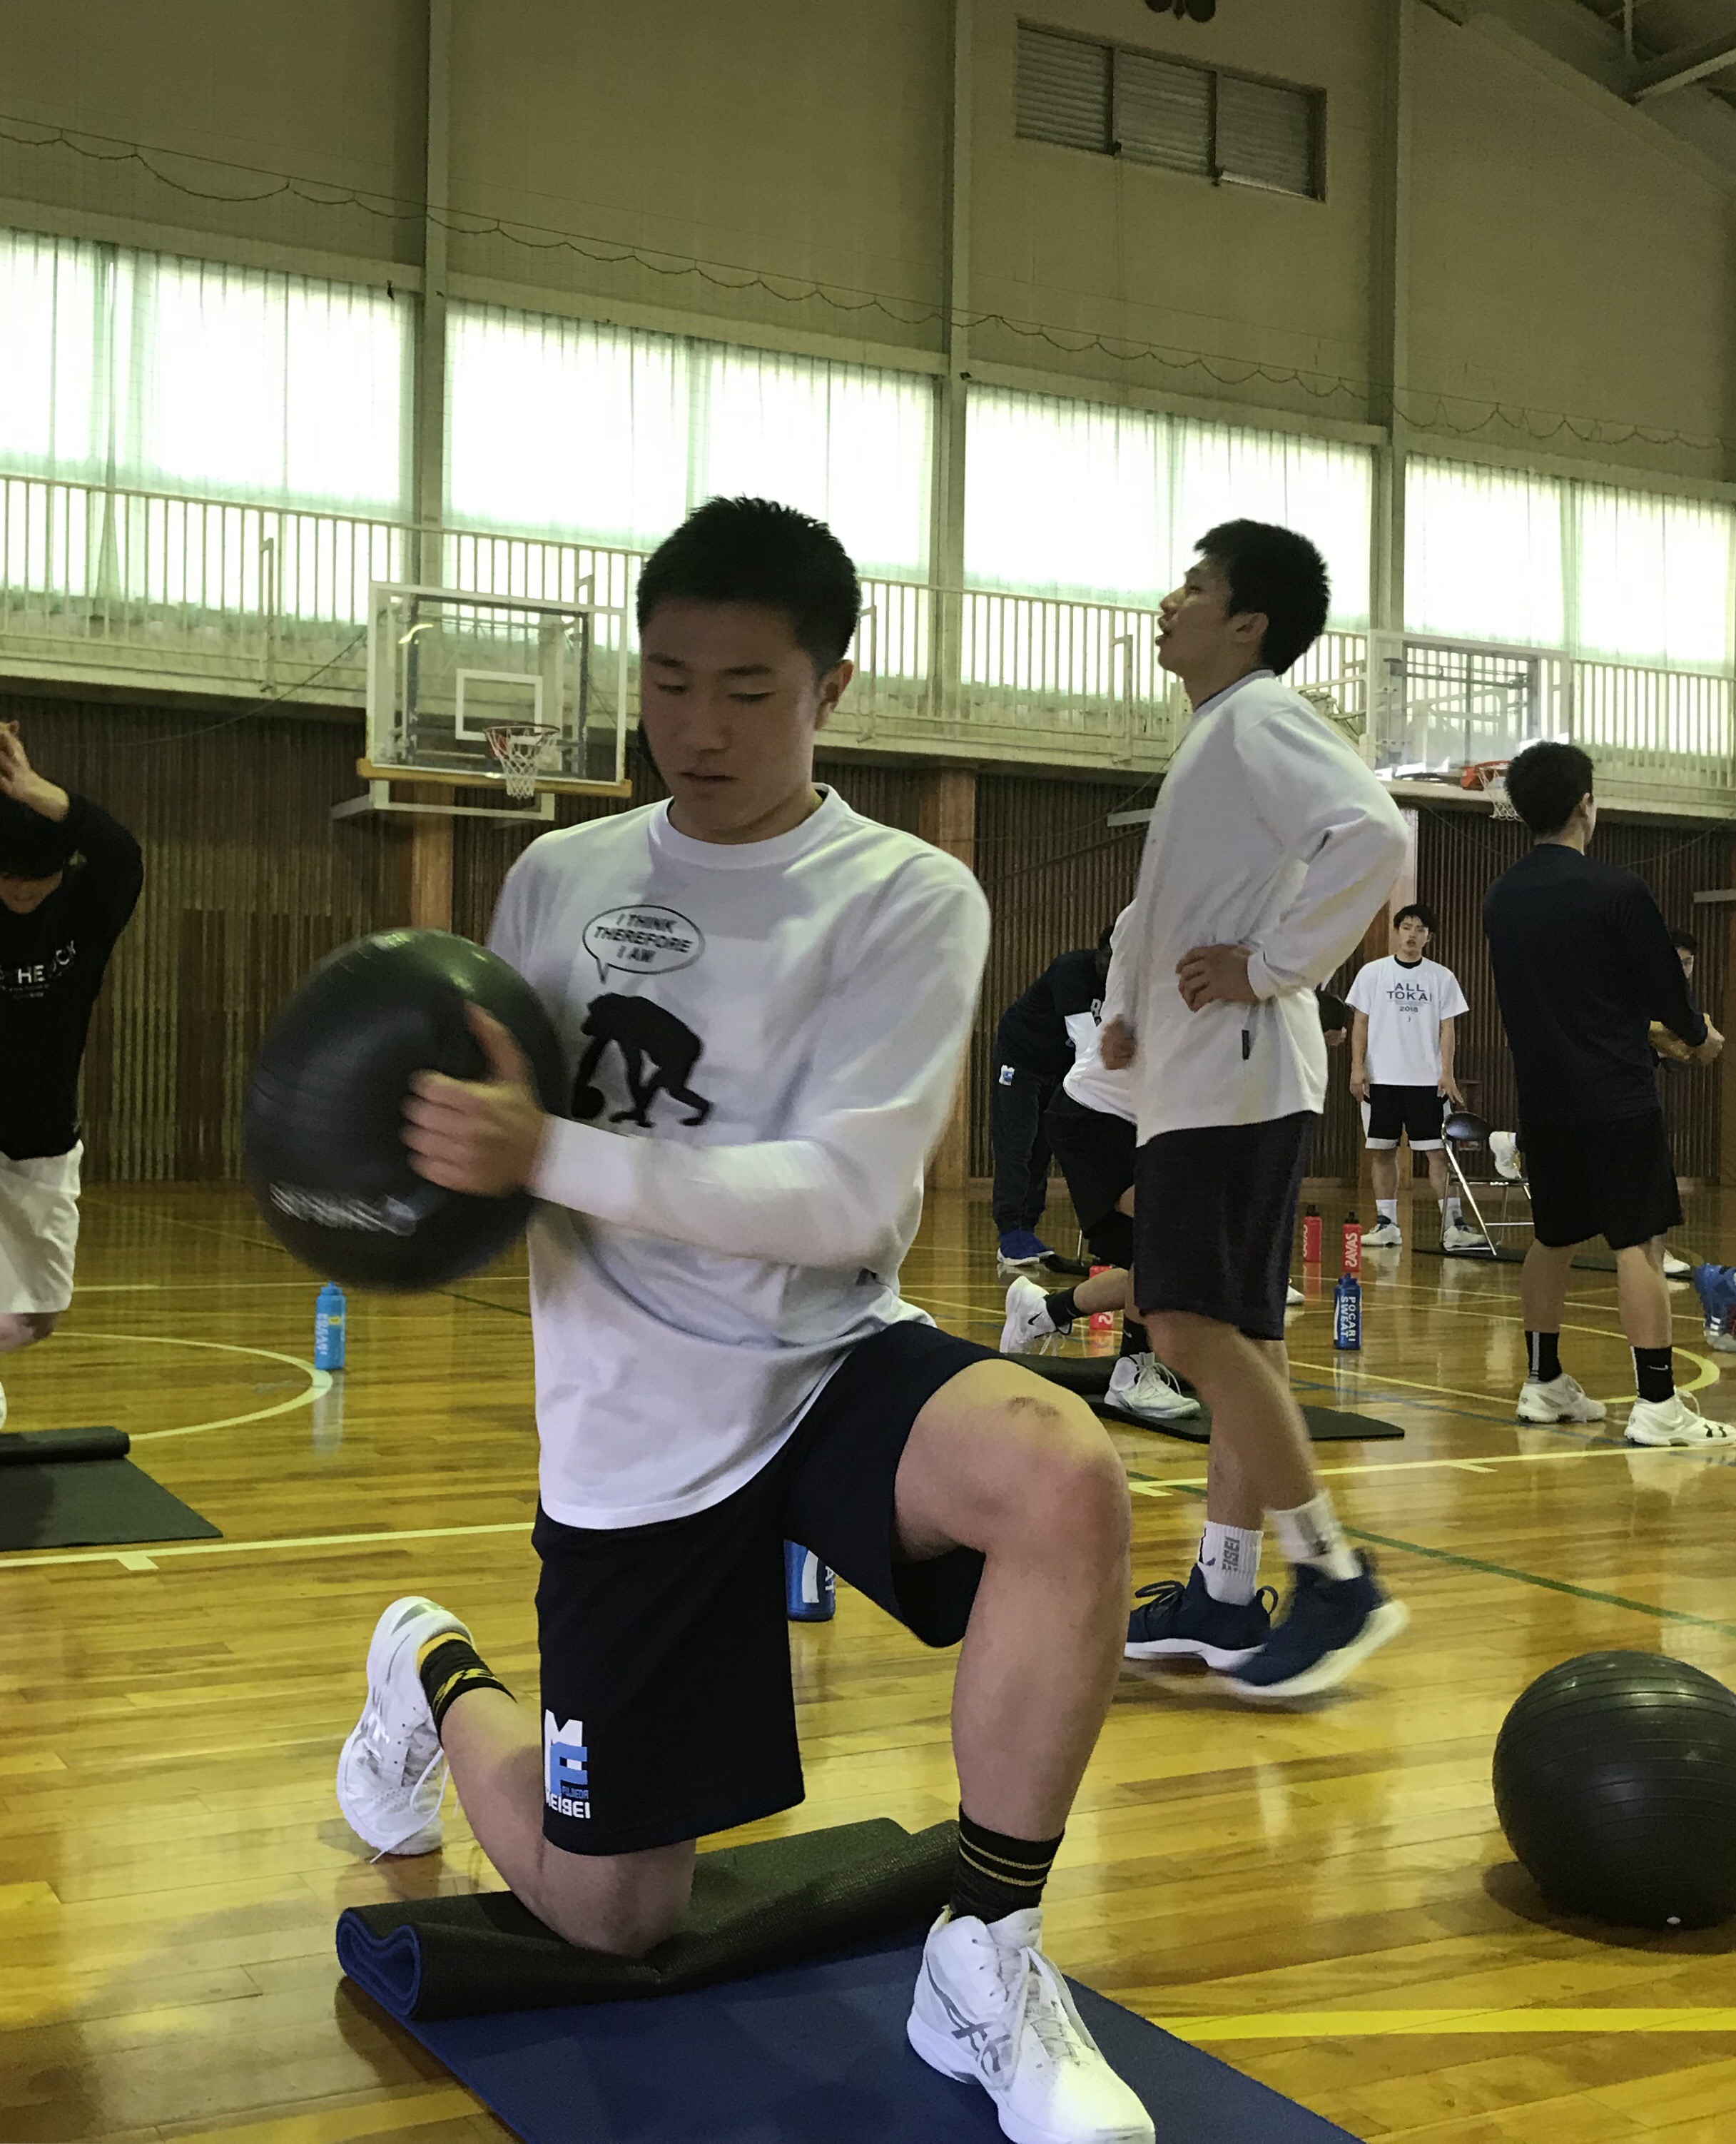 ウィンターカップ静岡県予選を制した藤枝明誠高校バスケットボール部のトレーニング風景